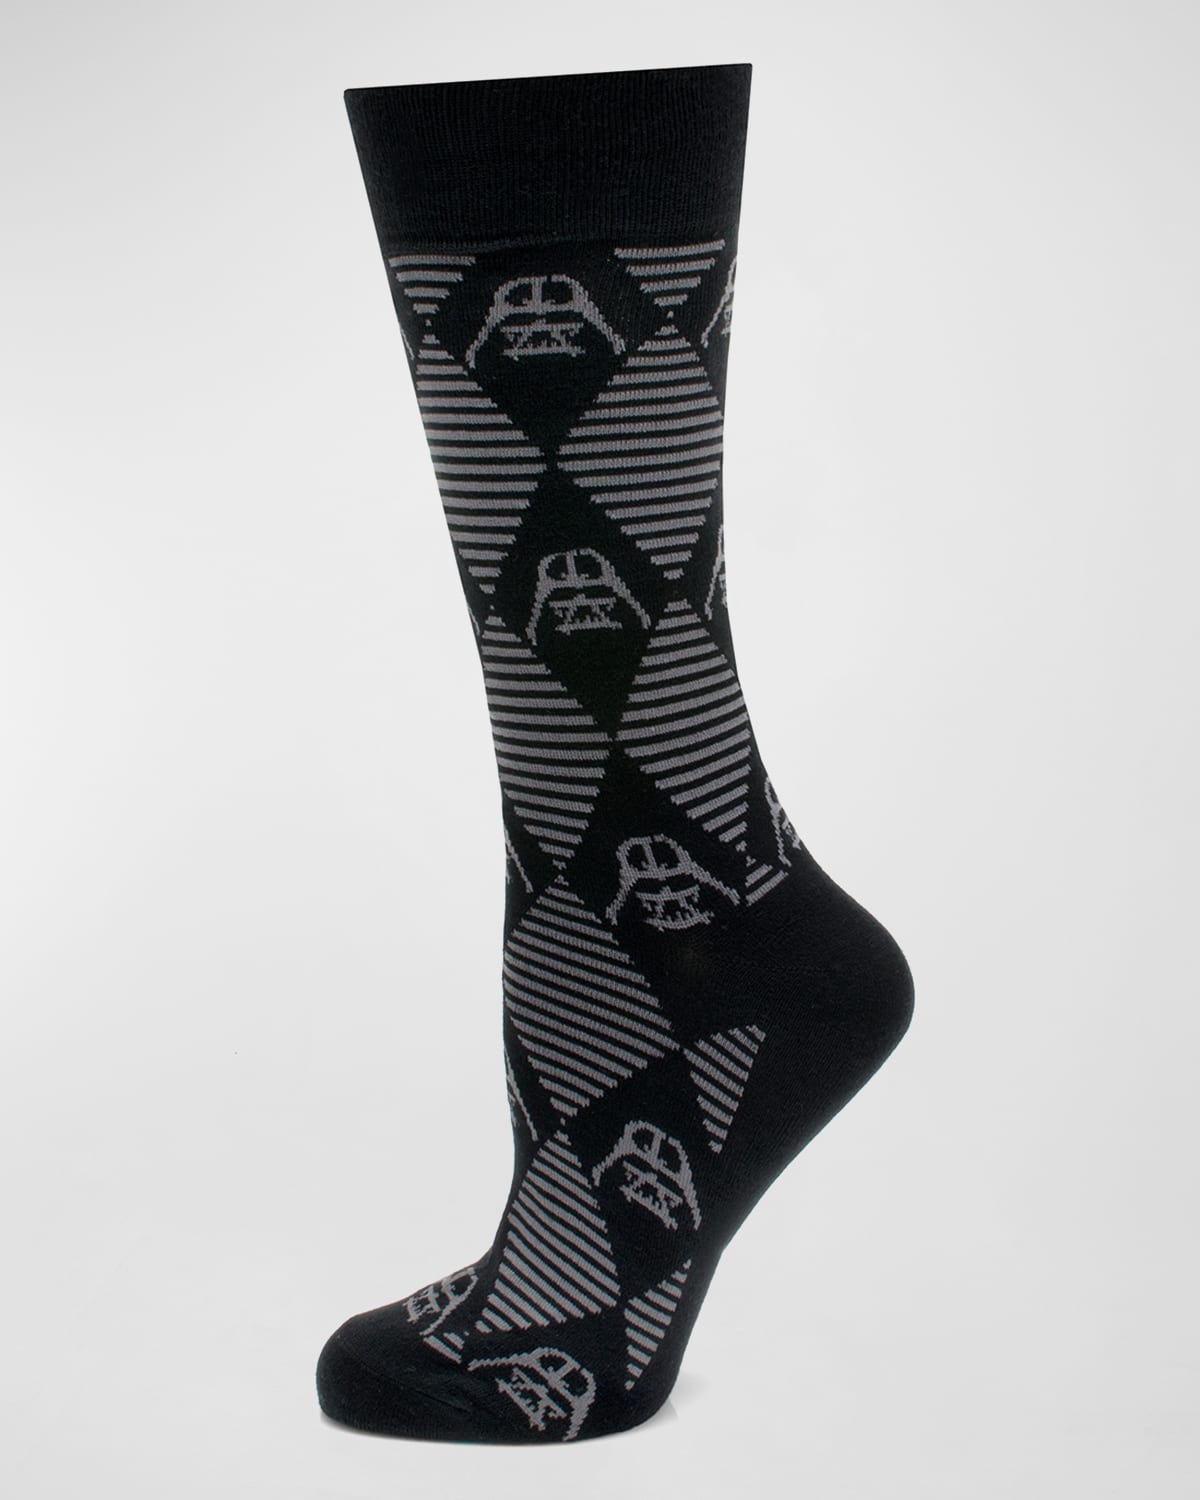 Star Wars Darth Vader Argyle Socks